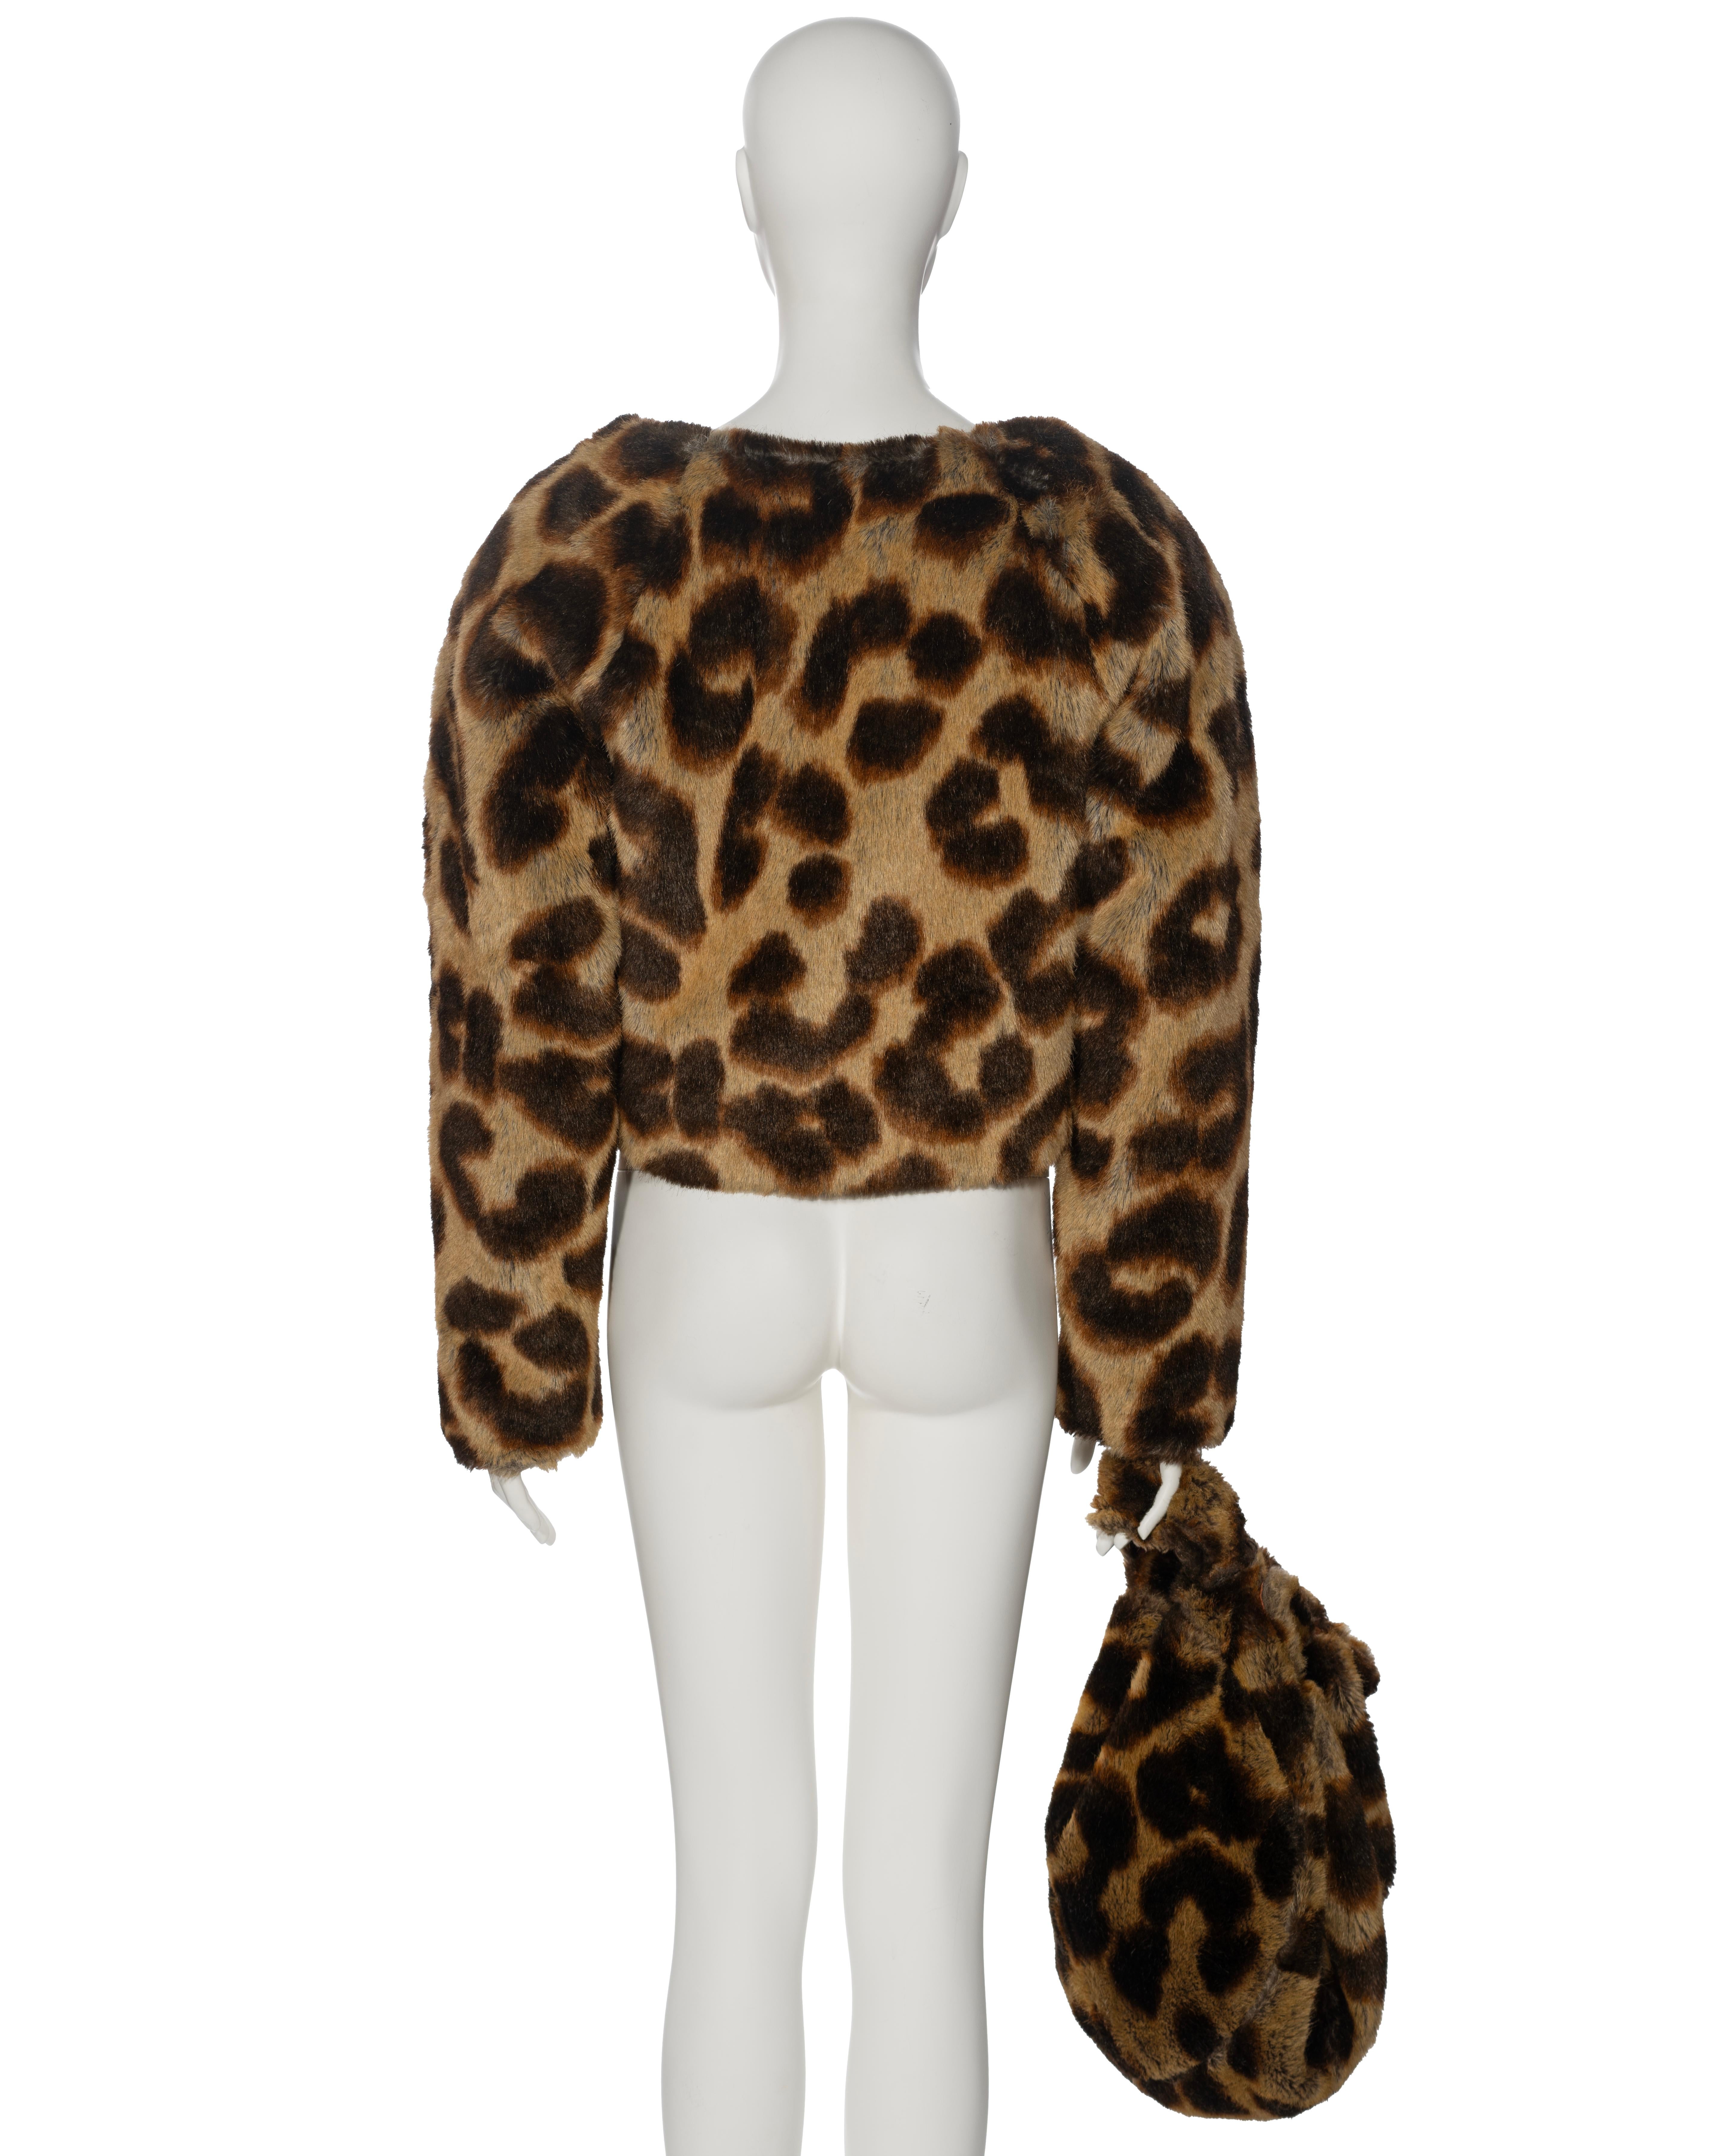 Vivienne Westwood Leopard Print Faux Fur Jacket and Bag Set, fw 1992 4